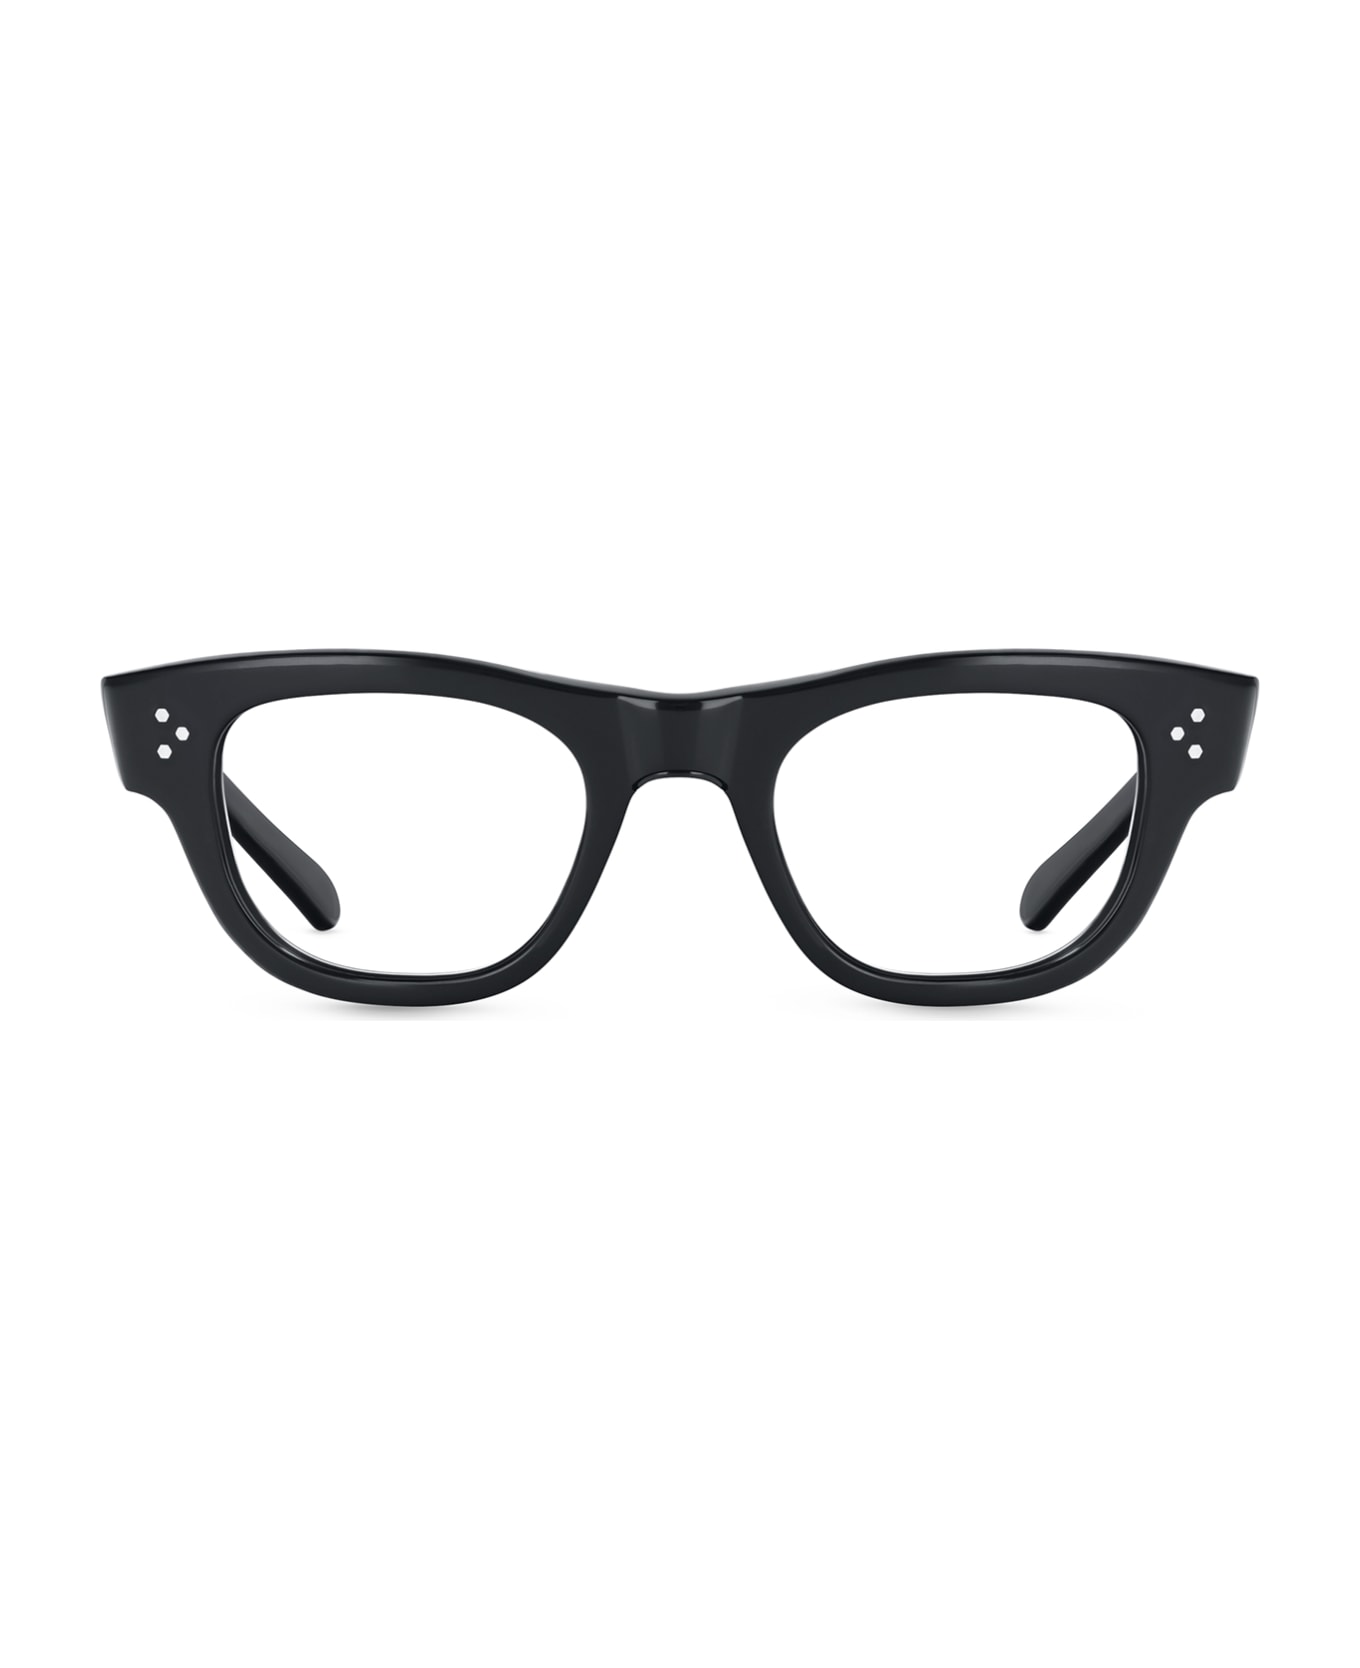 Mr. Leight Waimea C Black Glass-shiny Black Glasses - Black Glass-Shiny Black